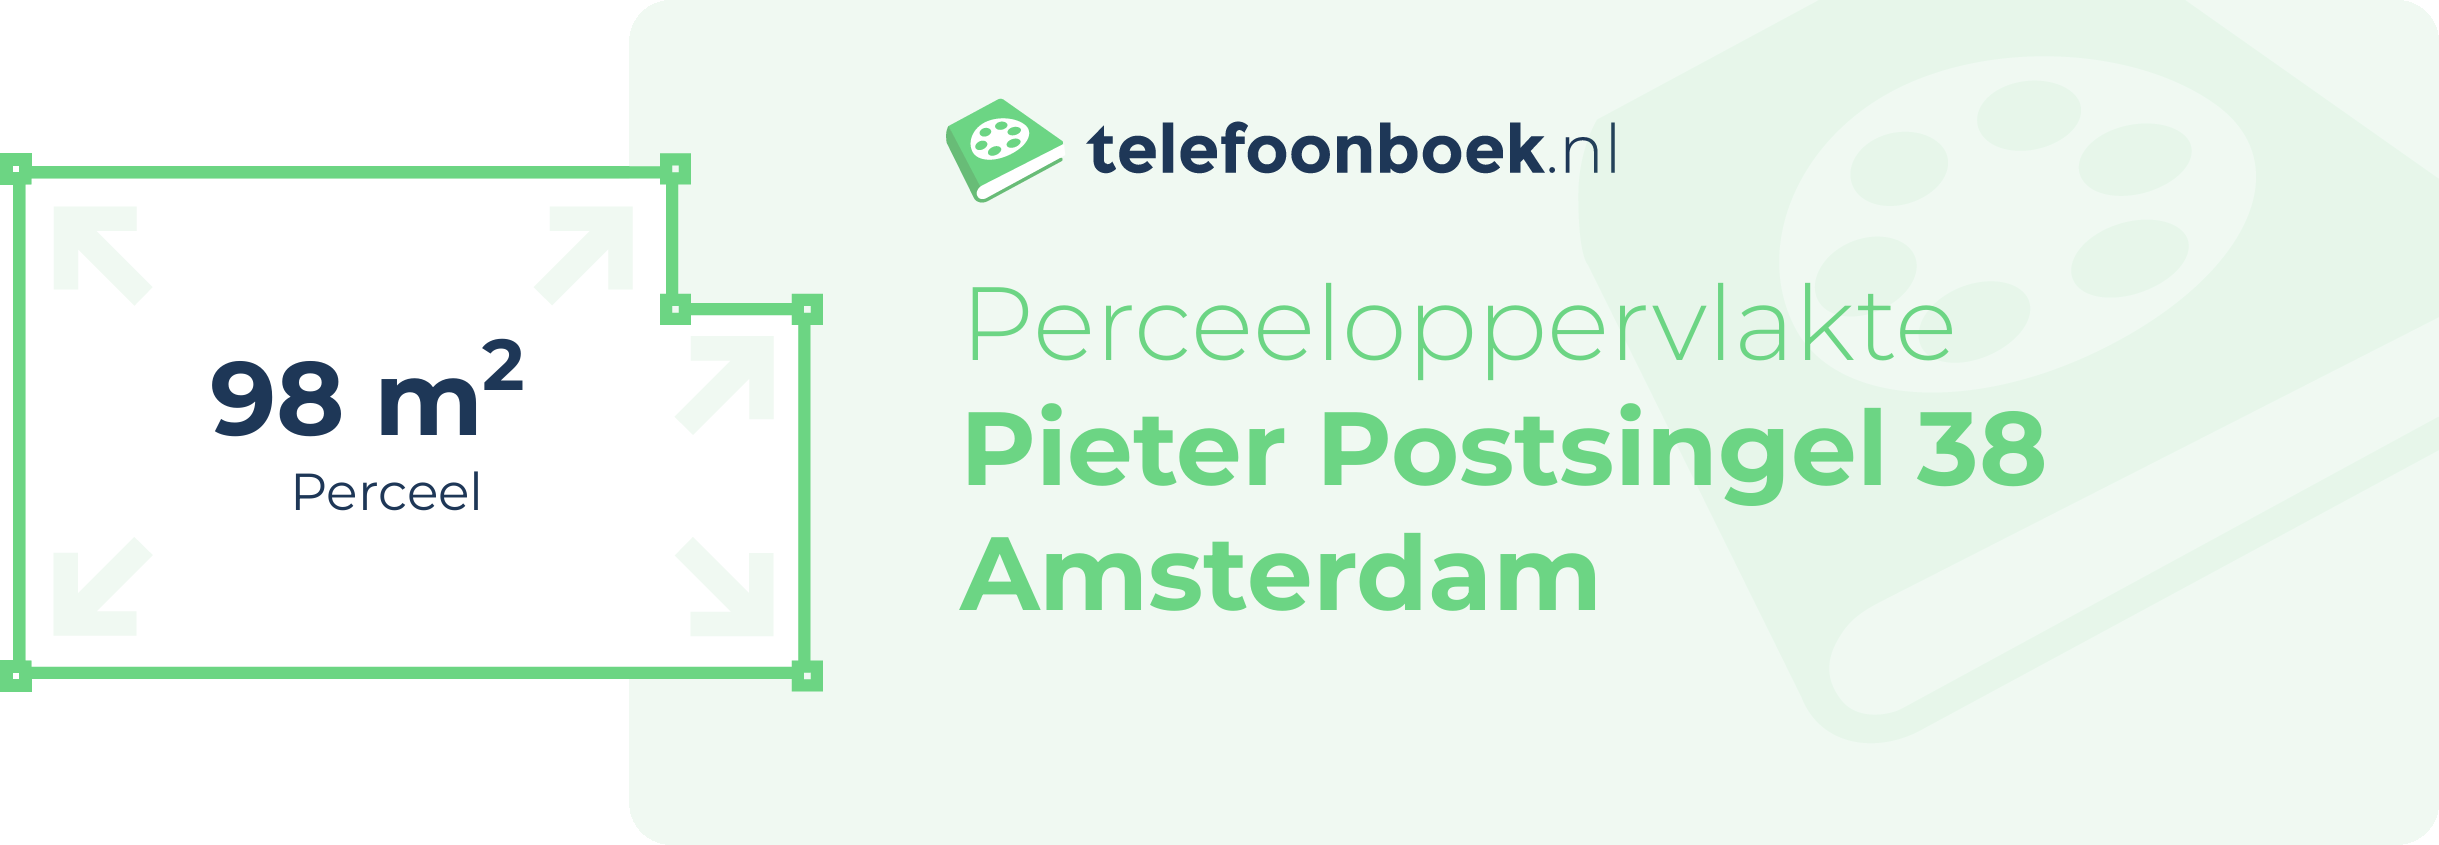 Perceeloppervlakte Pieter Postsingel 38 Amsterdam